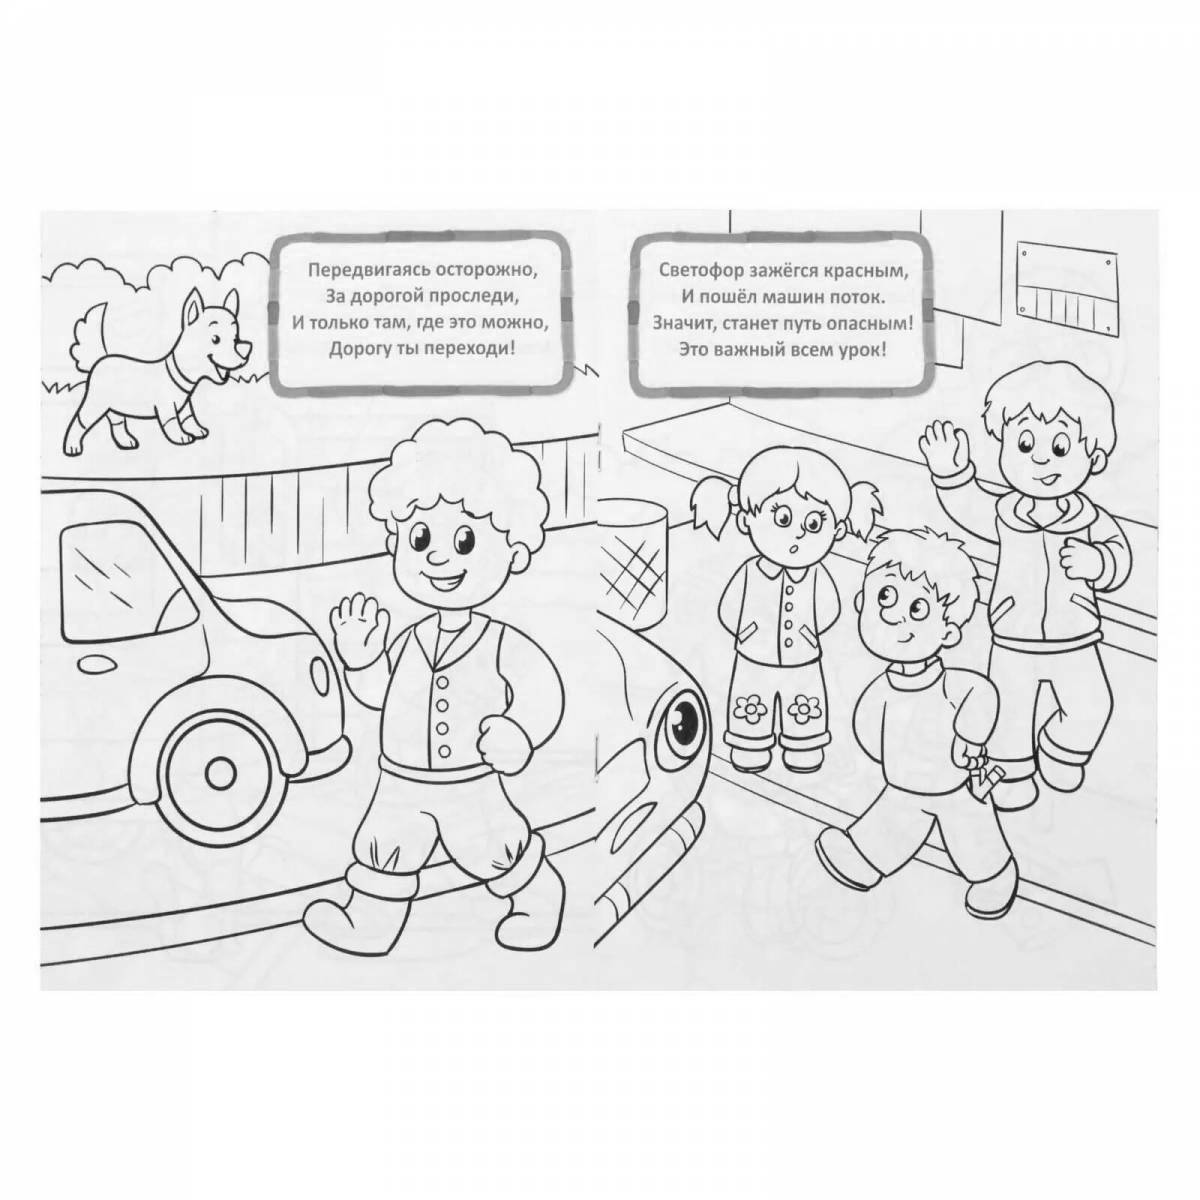 Привлекательная страница безопасности дорожного движения для дошкольников